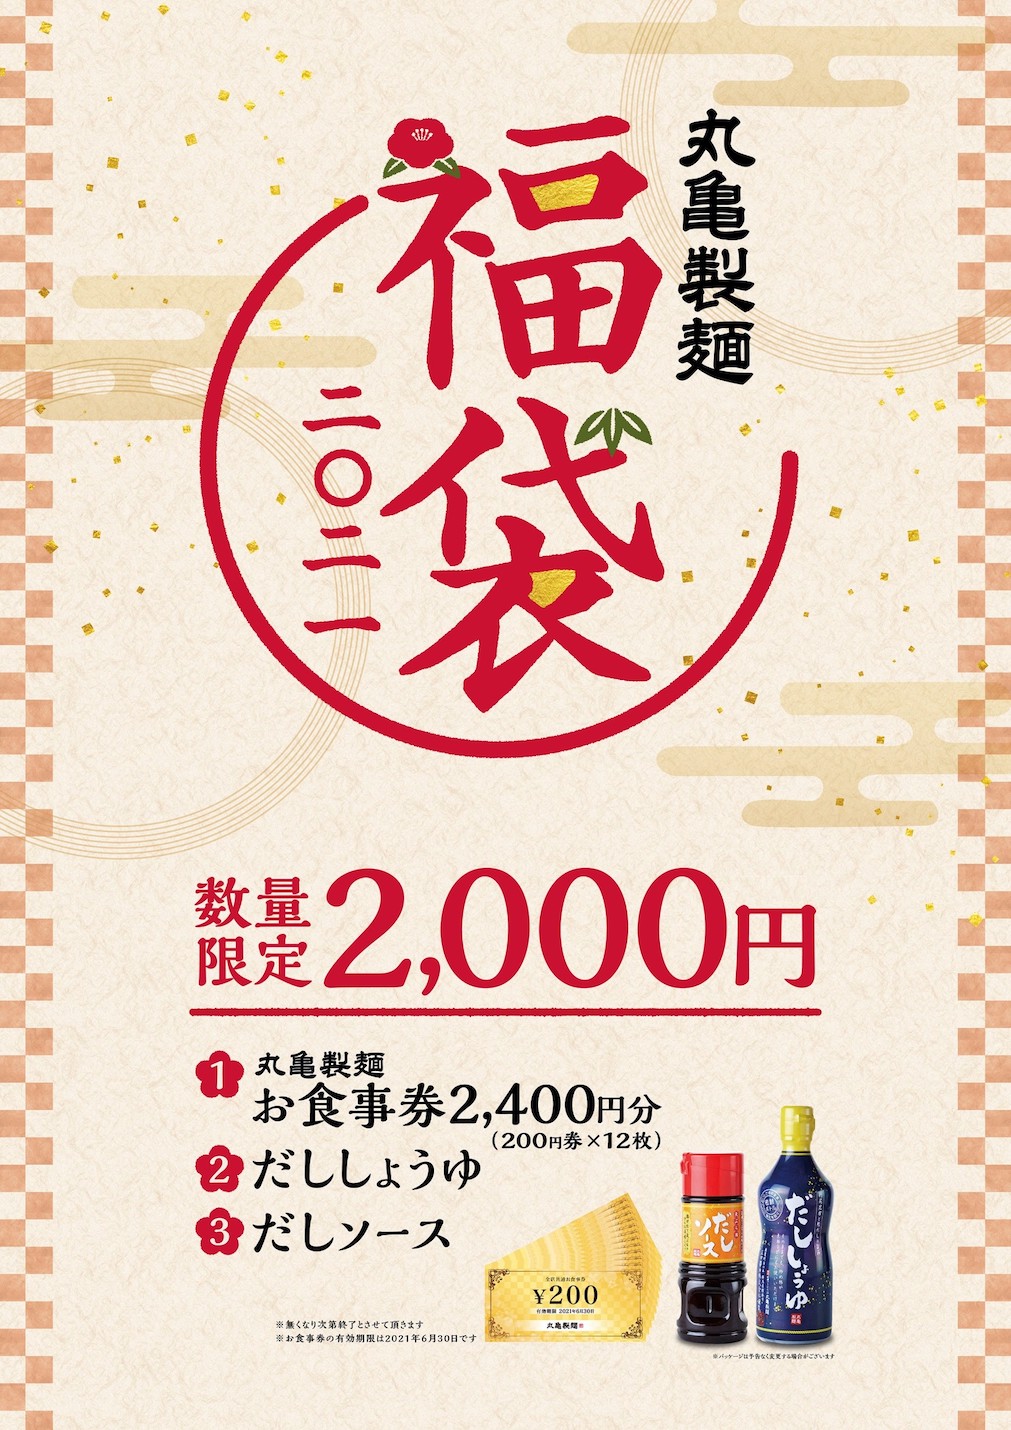 丸亀製麺 福袋 うどん桶 お食事券12,000円 だししょうゆ だしソース 七味チケット